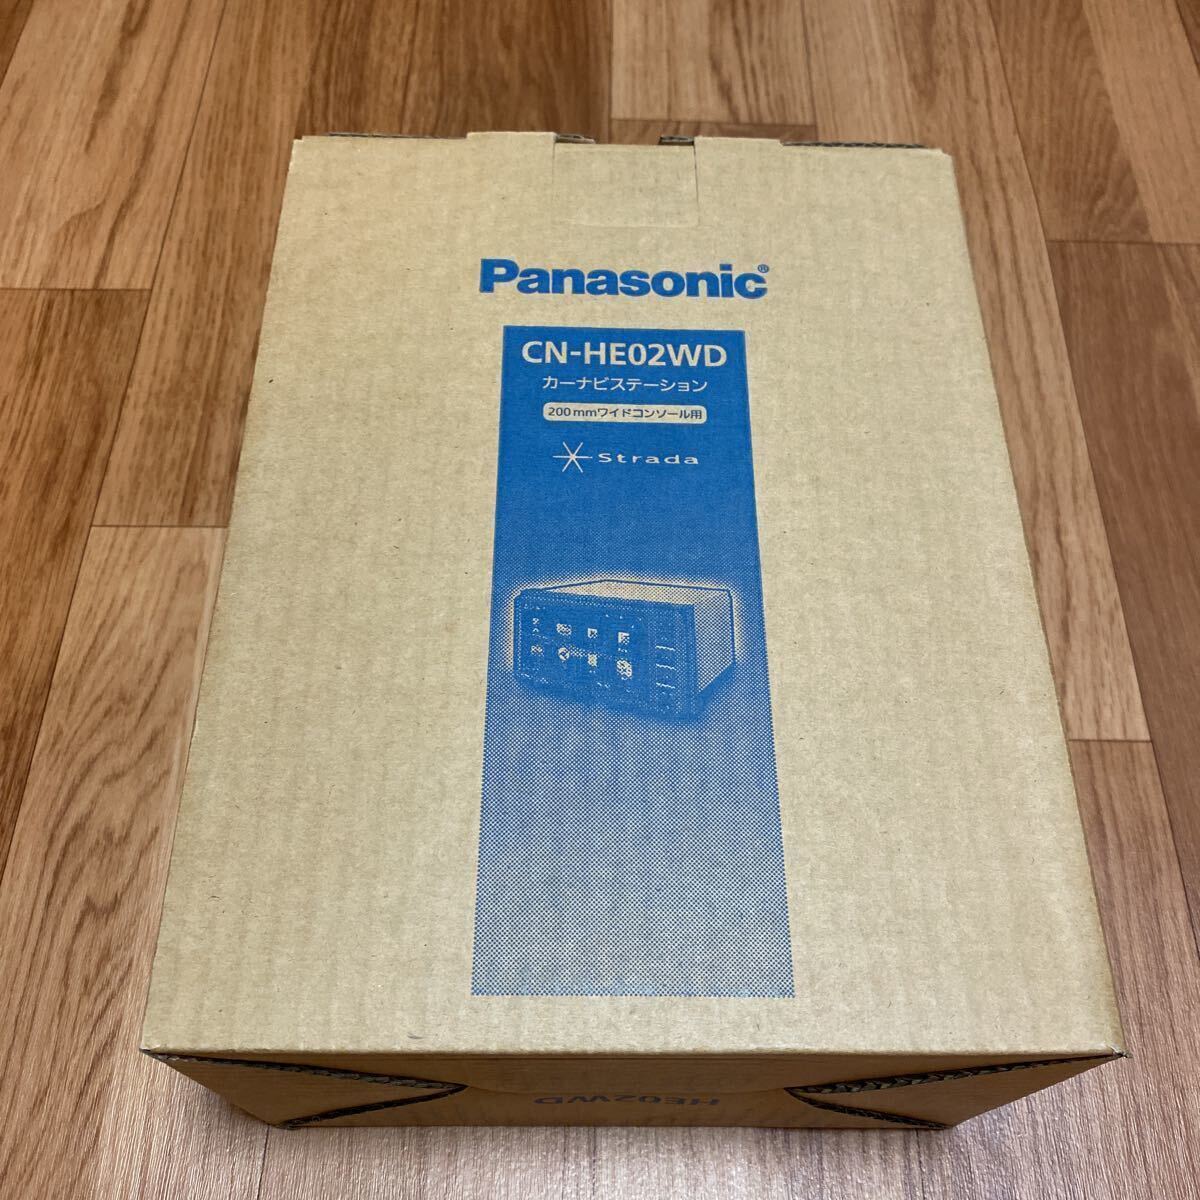 Panasonic ＣＮ－HE02WD パナソニック SDナビ カーナビ ステーション 200mm ワイド DVD 新品 送料無料の画像1